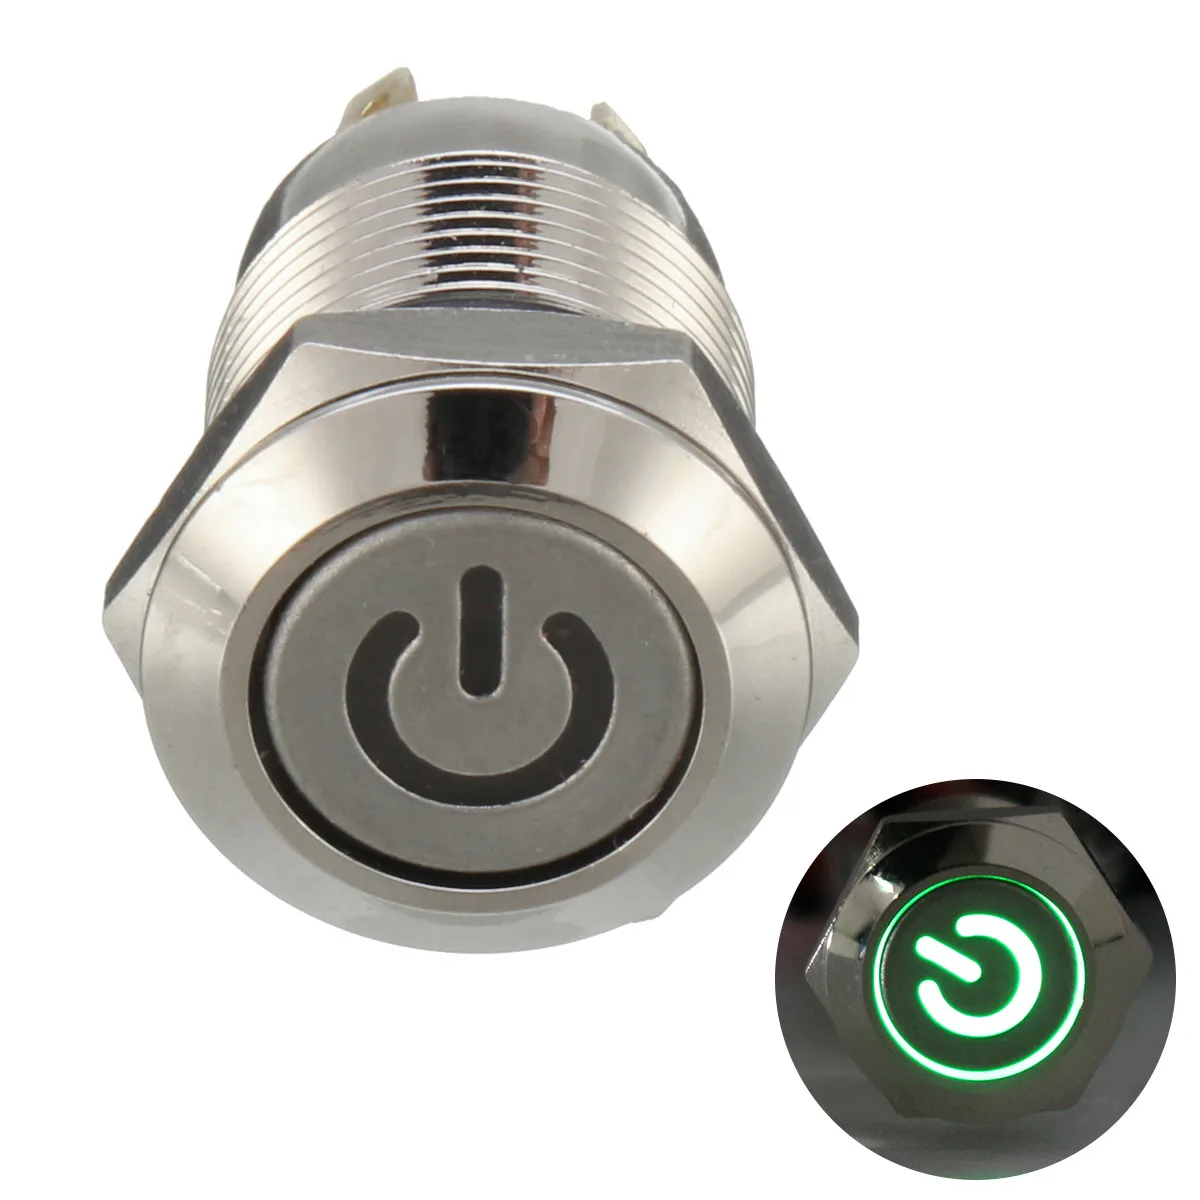 12 мм 4 шпильки металлический светодиодный кнопочный переключатель включения/выключения мгновенная плоская головка 12 в пусковой переключатель водонепроницаемый - Цвет: Армейский зеленый